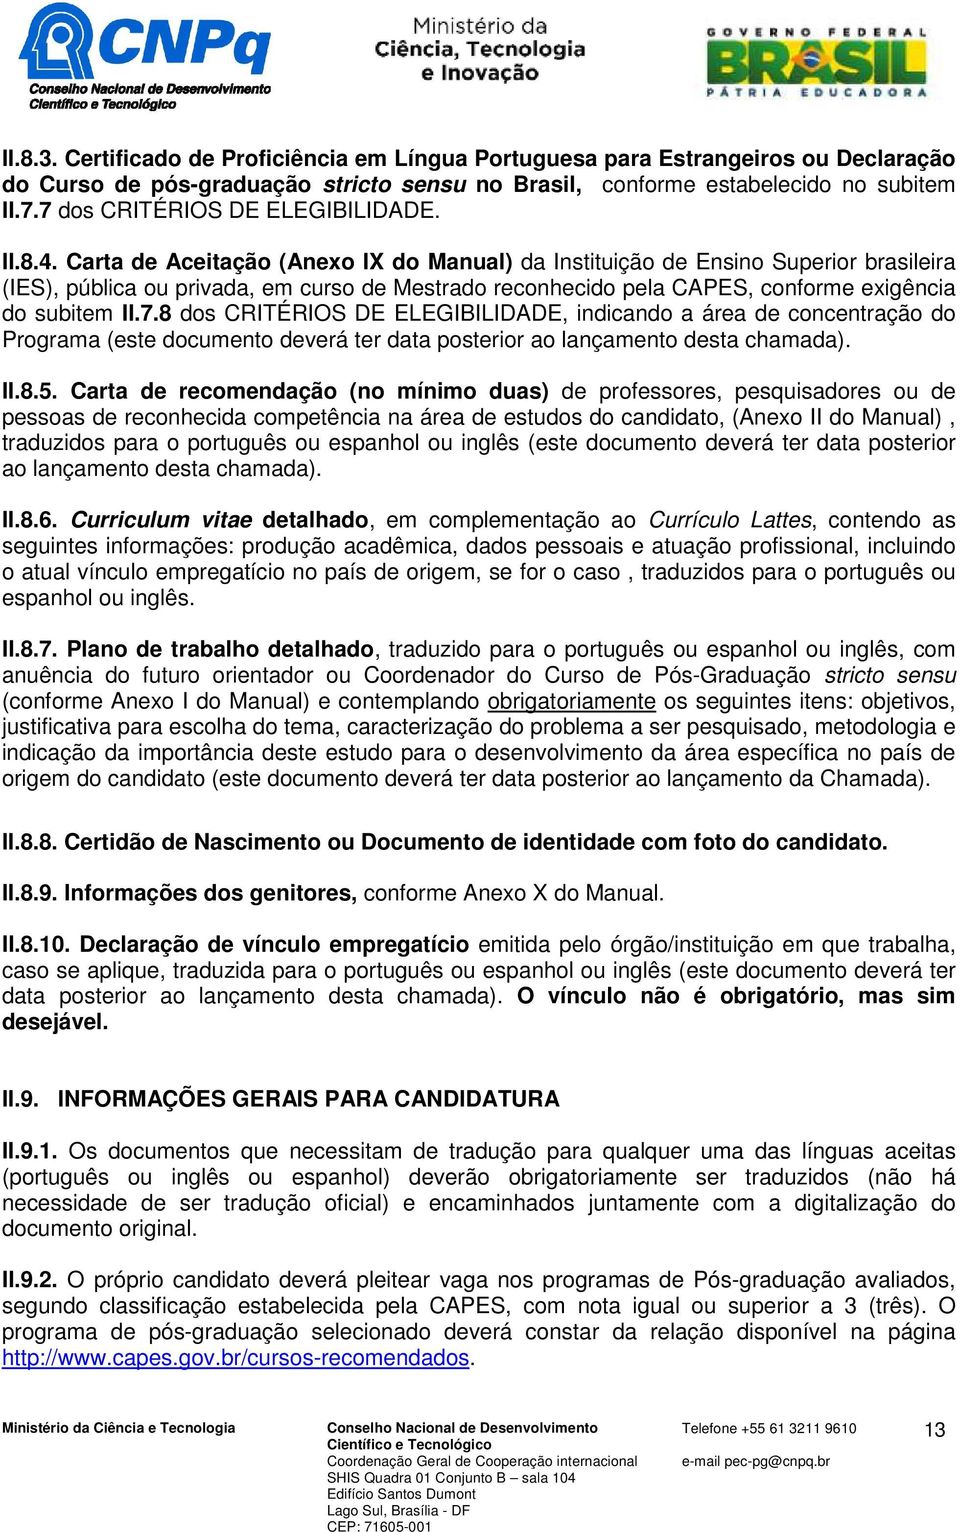 Carta de Aceitação (Anexo IX do Manual) da Instituição de Ensino Superior brasileira (IES), pública ou privada, em curso de Mestrado reconhecido pela CAPES, conforme exigência do subitem II.7.